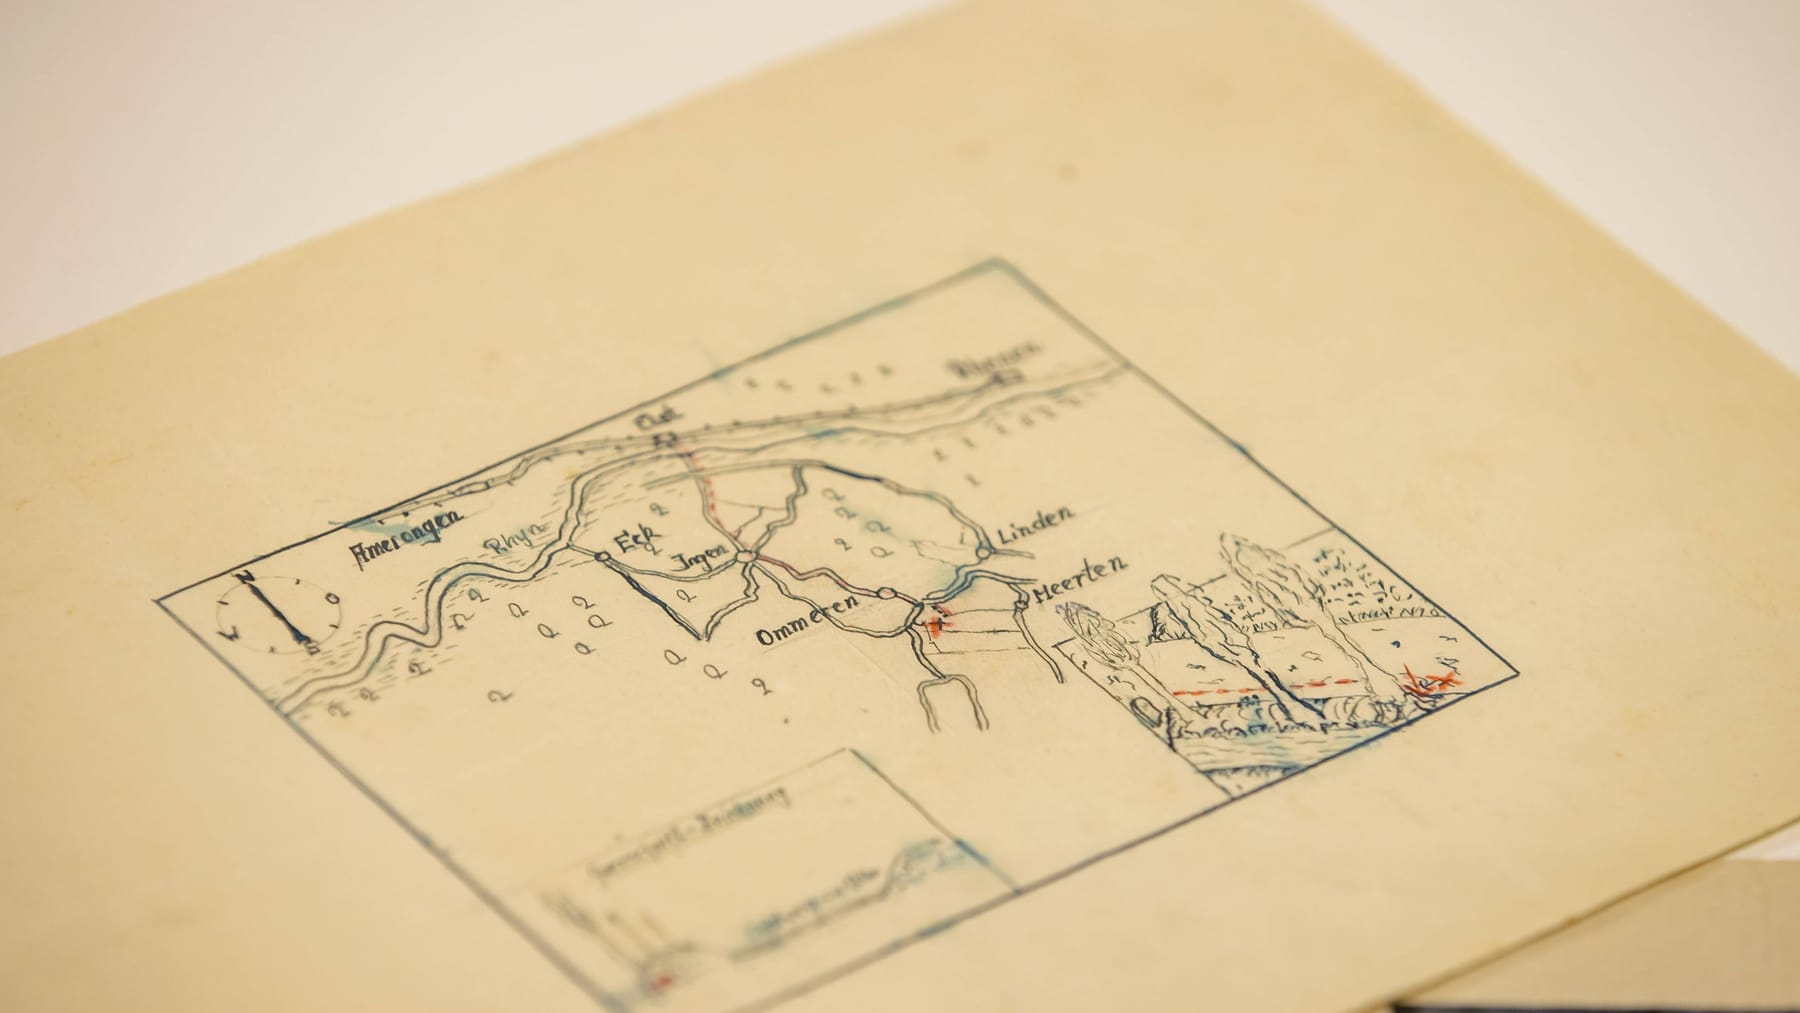 Holland publiceert een voorheen onbekende kaart